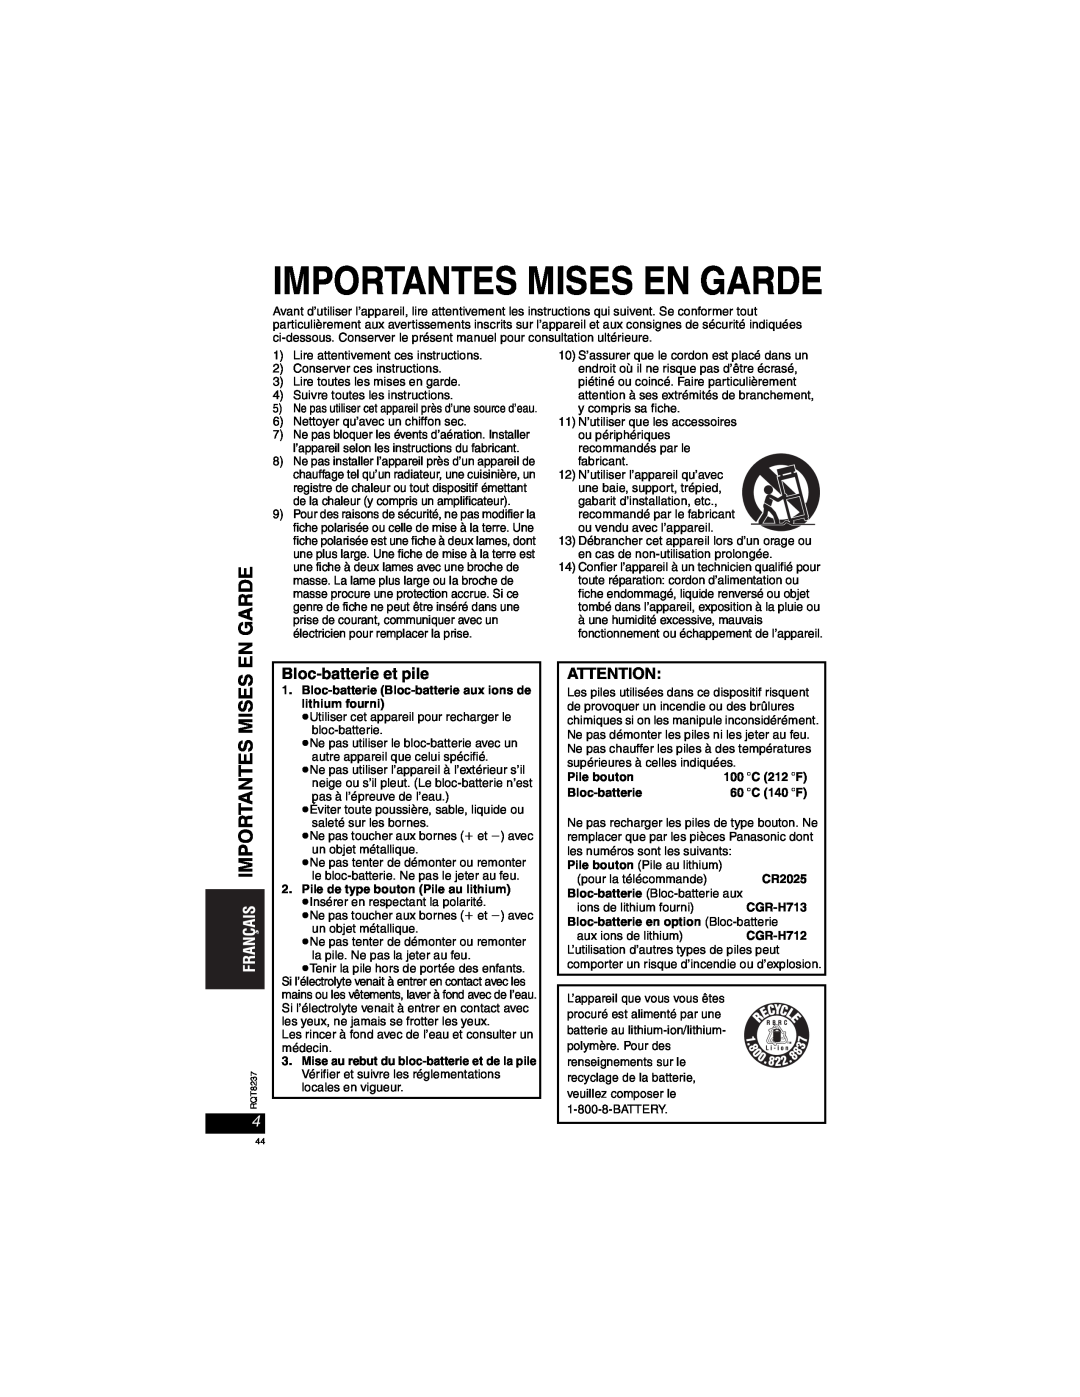 Panasonic DVD-LX97 Importantes Mises En Garde, Bloc-batterie et pile, Pile bouton, CR2025, CGR-H713, CGR-H712 